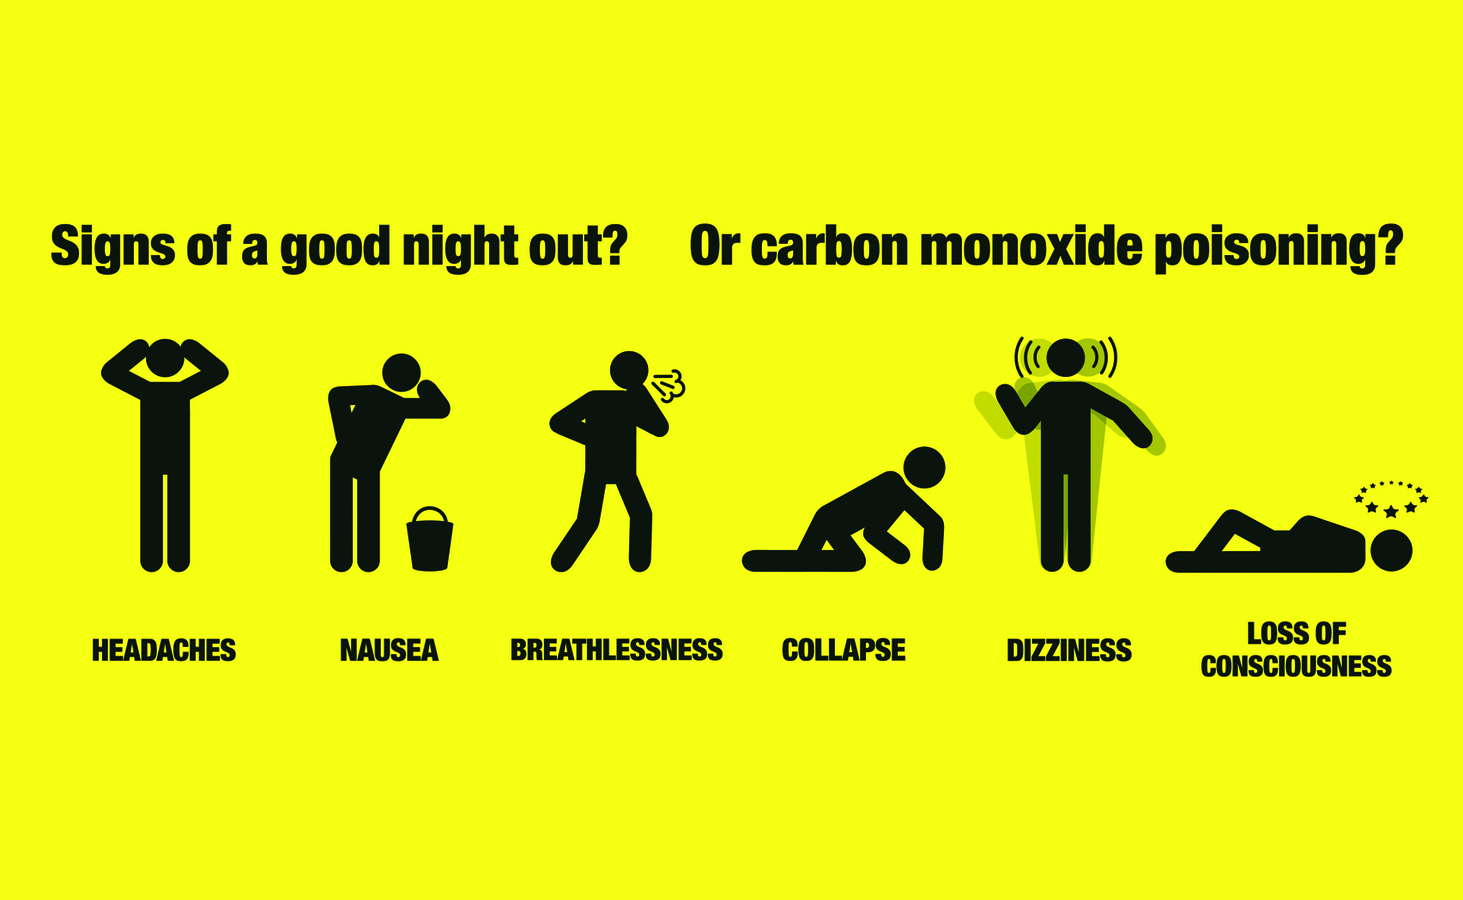 gas stove carbon monoxide poisoning symptoms